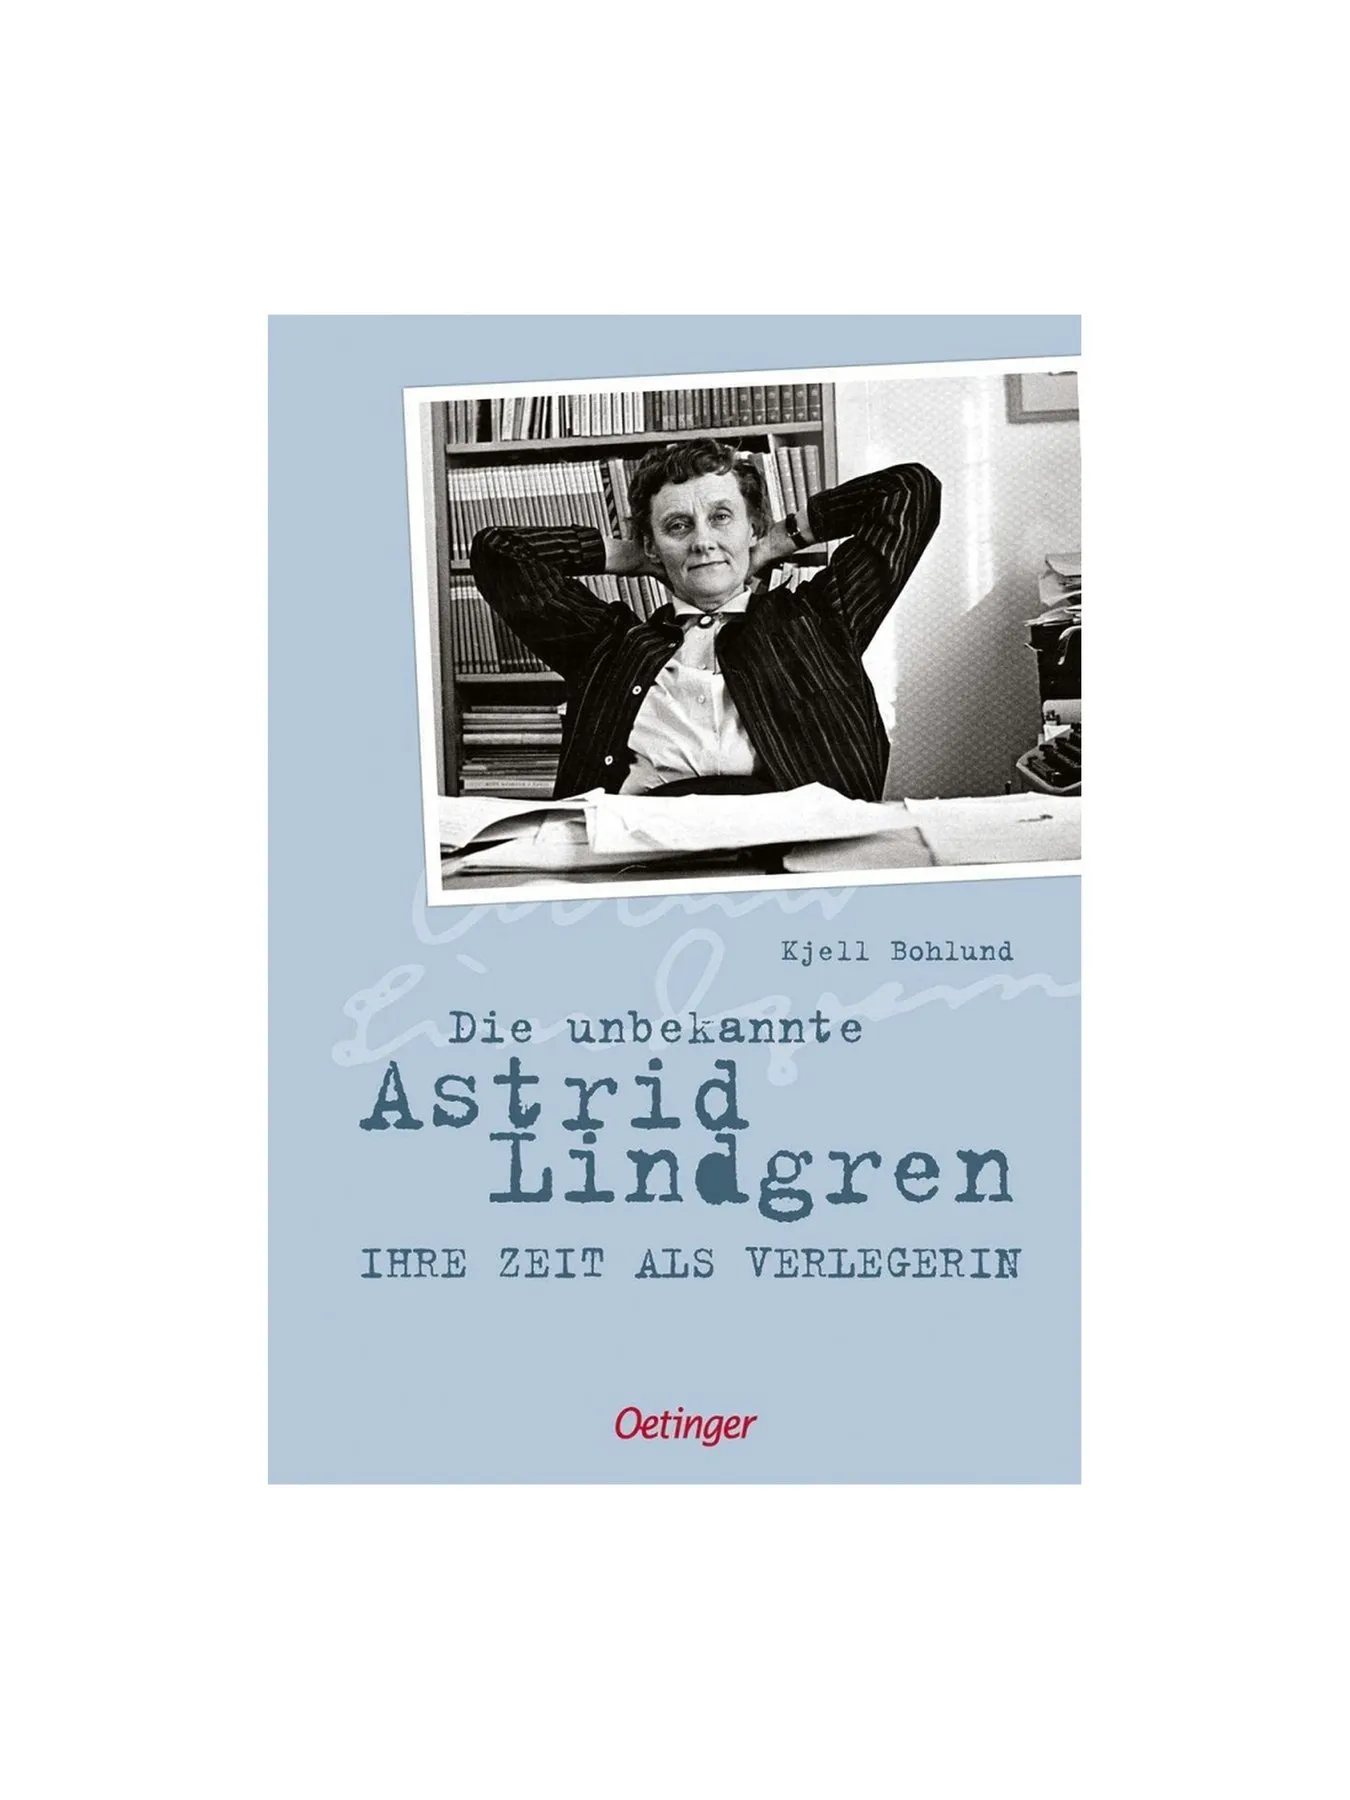 Die unbekannte Astrid Lindgren: Ihre Zeit als Verlegerin - German